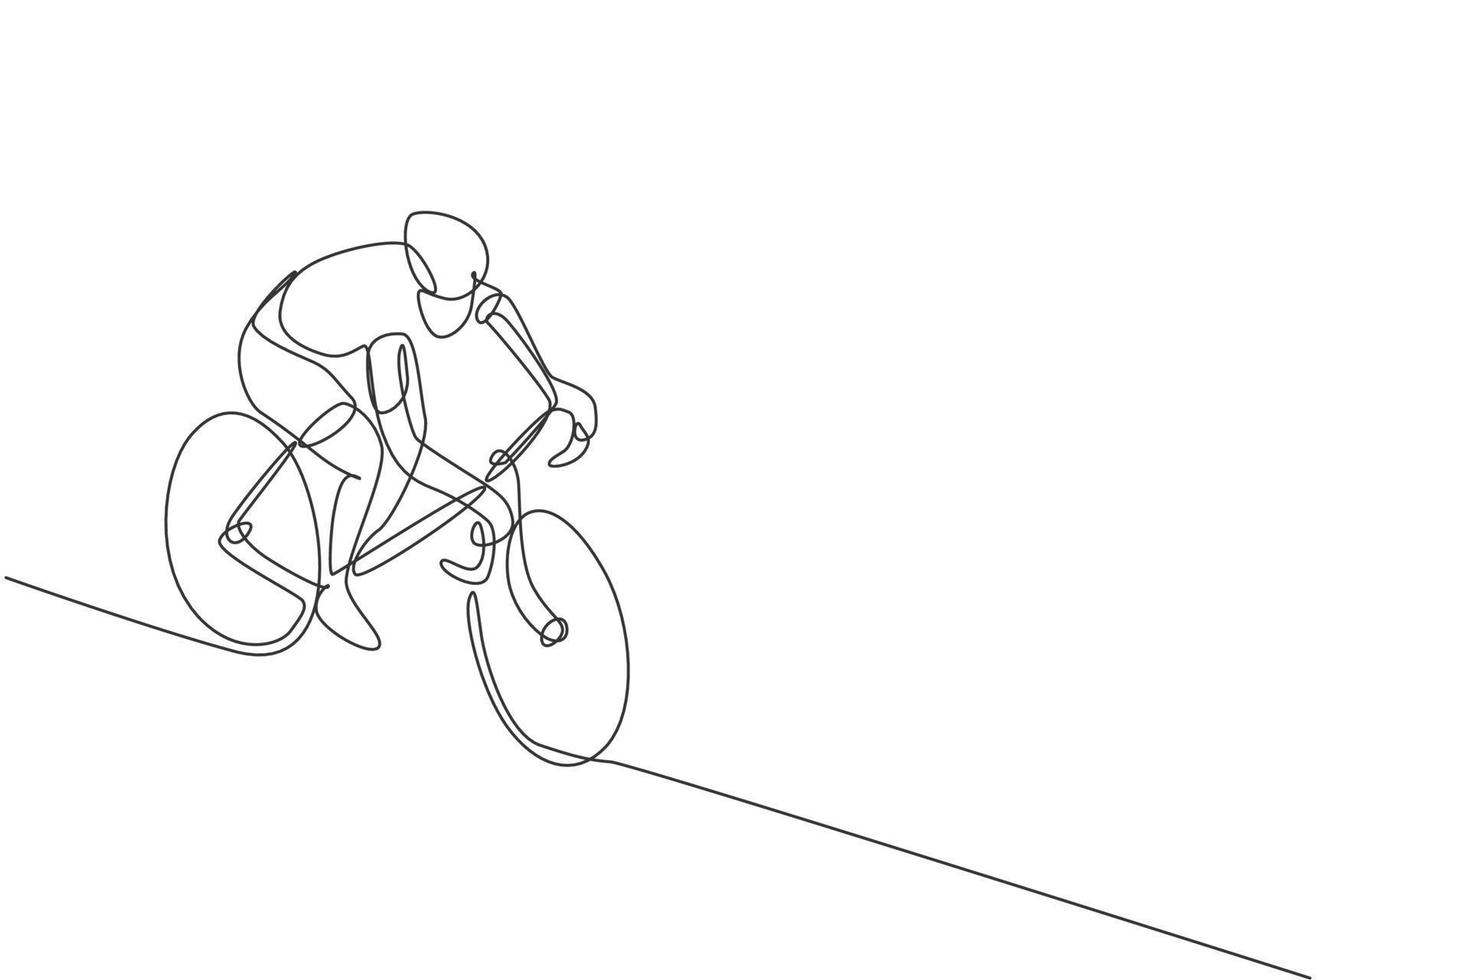 un disegno a linea singola di un giovane energico corridore in bicicletta su una pista ciclabile illustrazione grafica vettoriale. concetto di ciclista da corsa. moderno disegno a linea continua per banner di tornei di ciclismo vettore